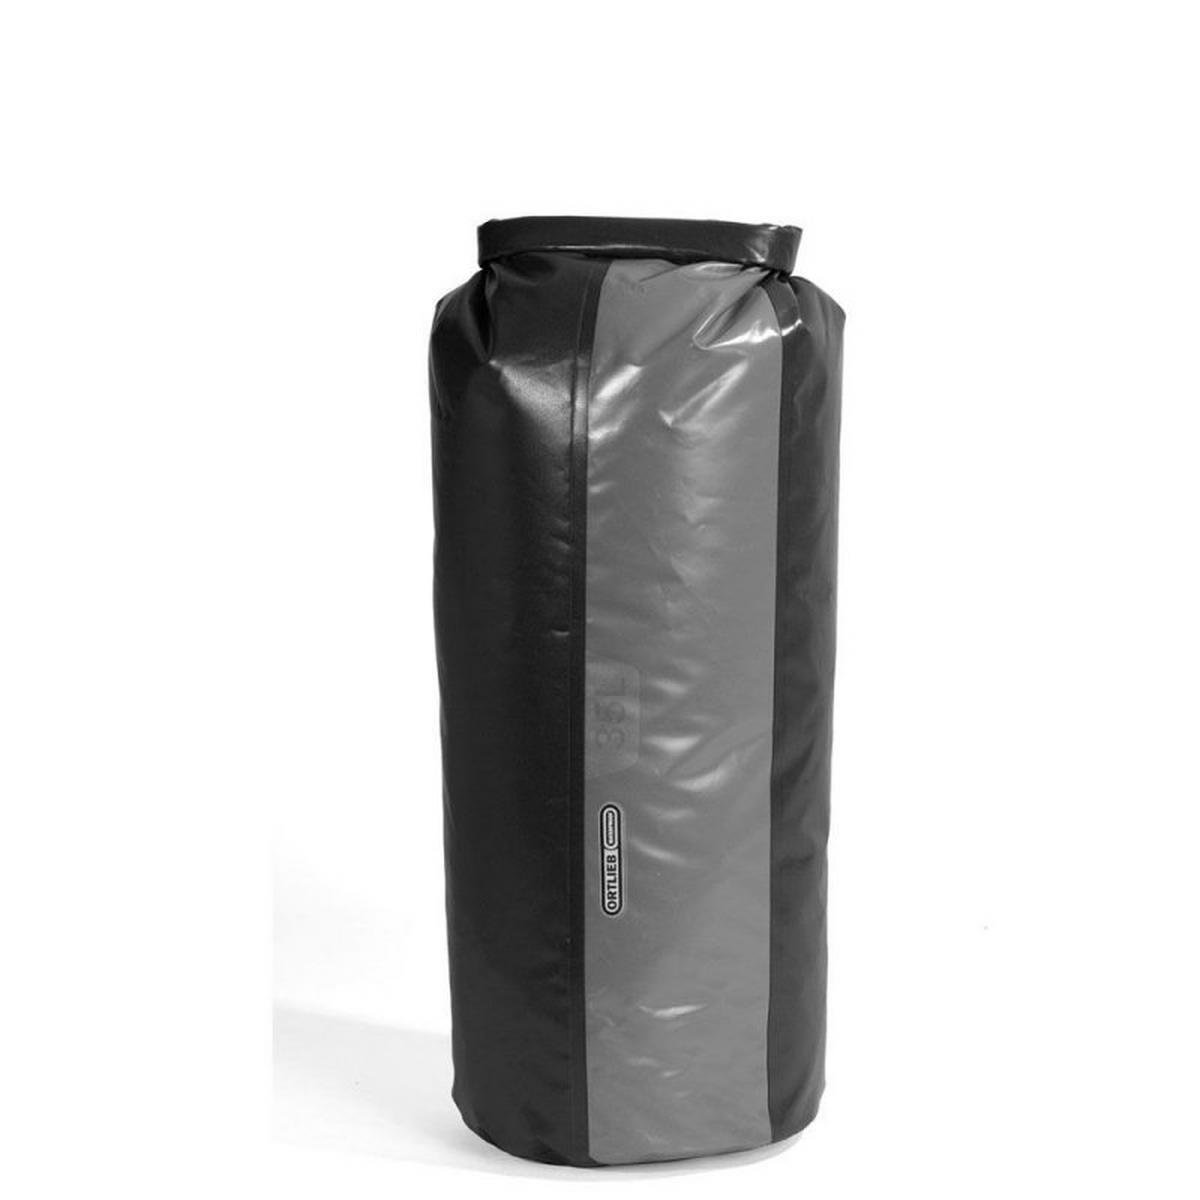 Ortlieb Packsafe Drybag Pd350 - 35L